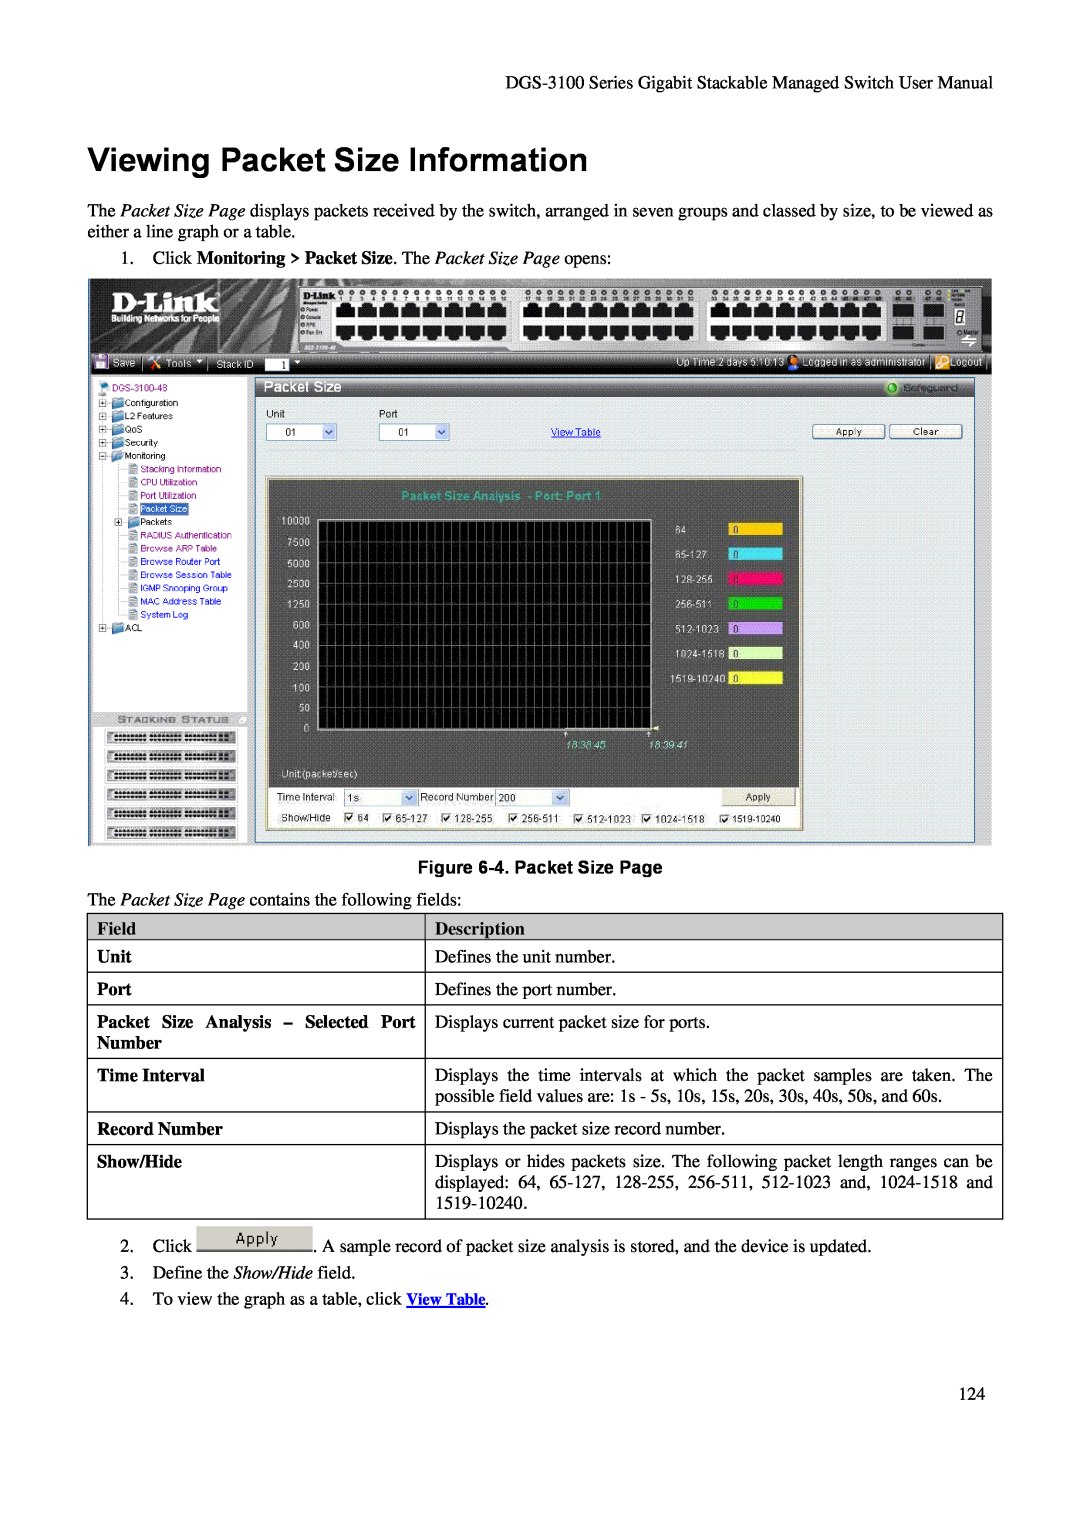 D-Link DGS-3100 Viewing Packet Size Information, Click Monitoring Packet Size. The Packet Size Page opens, Description 